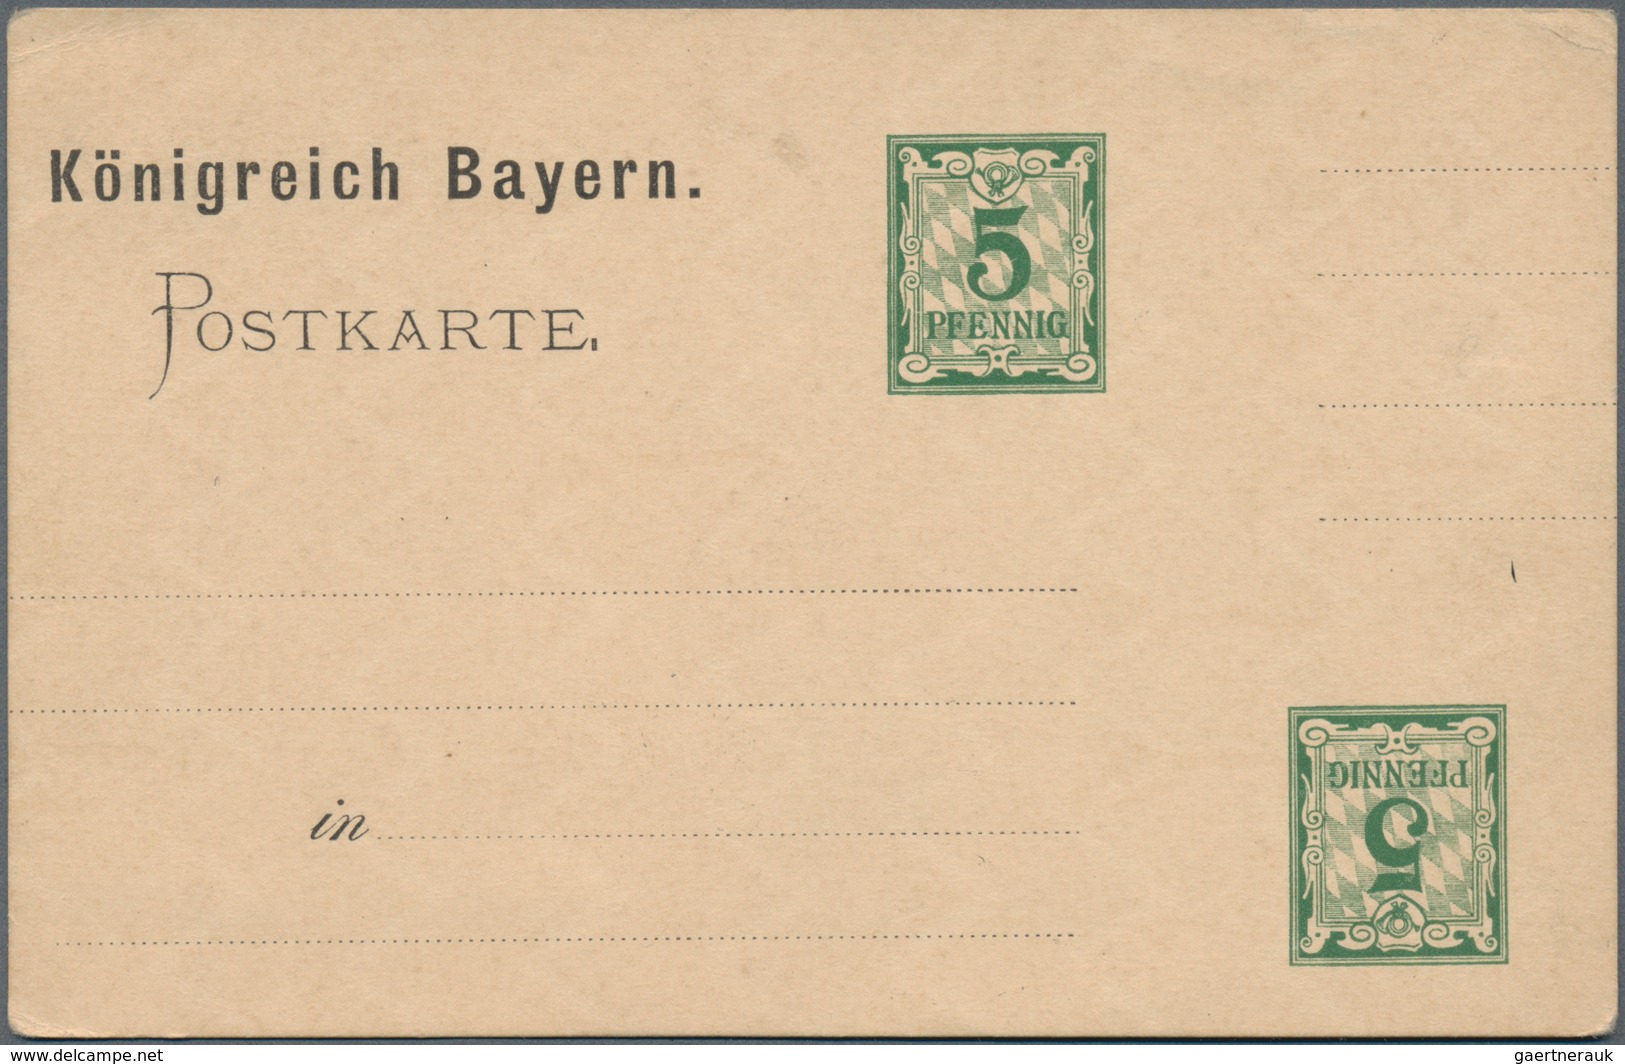 Bayern - Ganzsachen: 1875/1920 (ca.), reichhaltiger Posten von einigen hundert ungebrauchten und geb